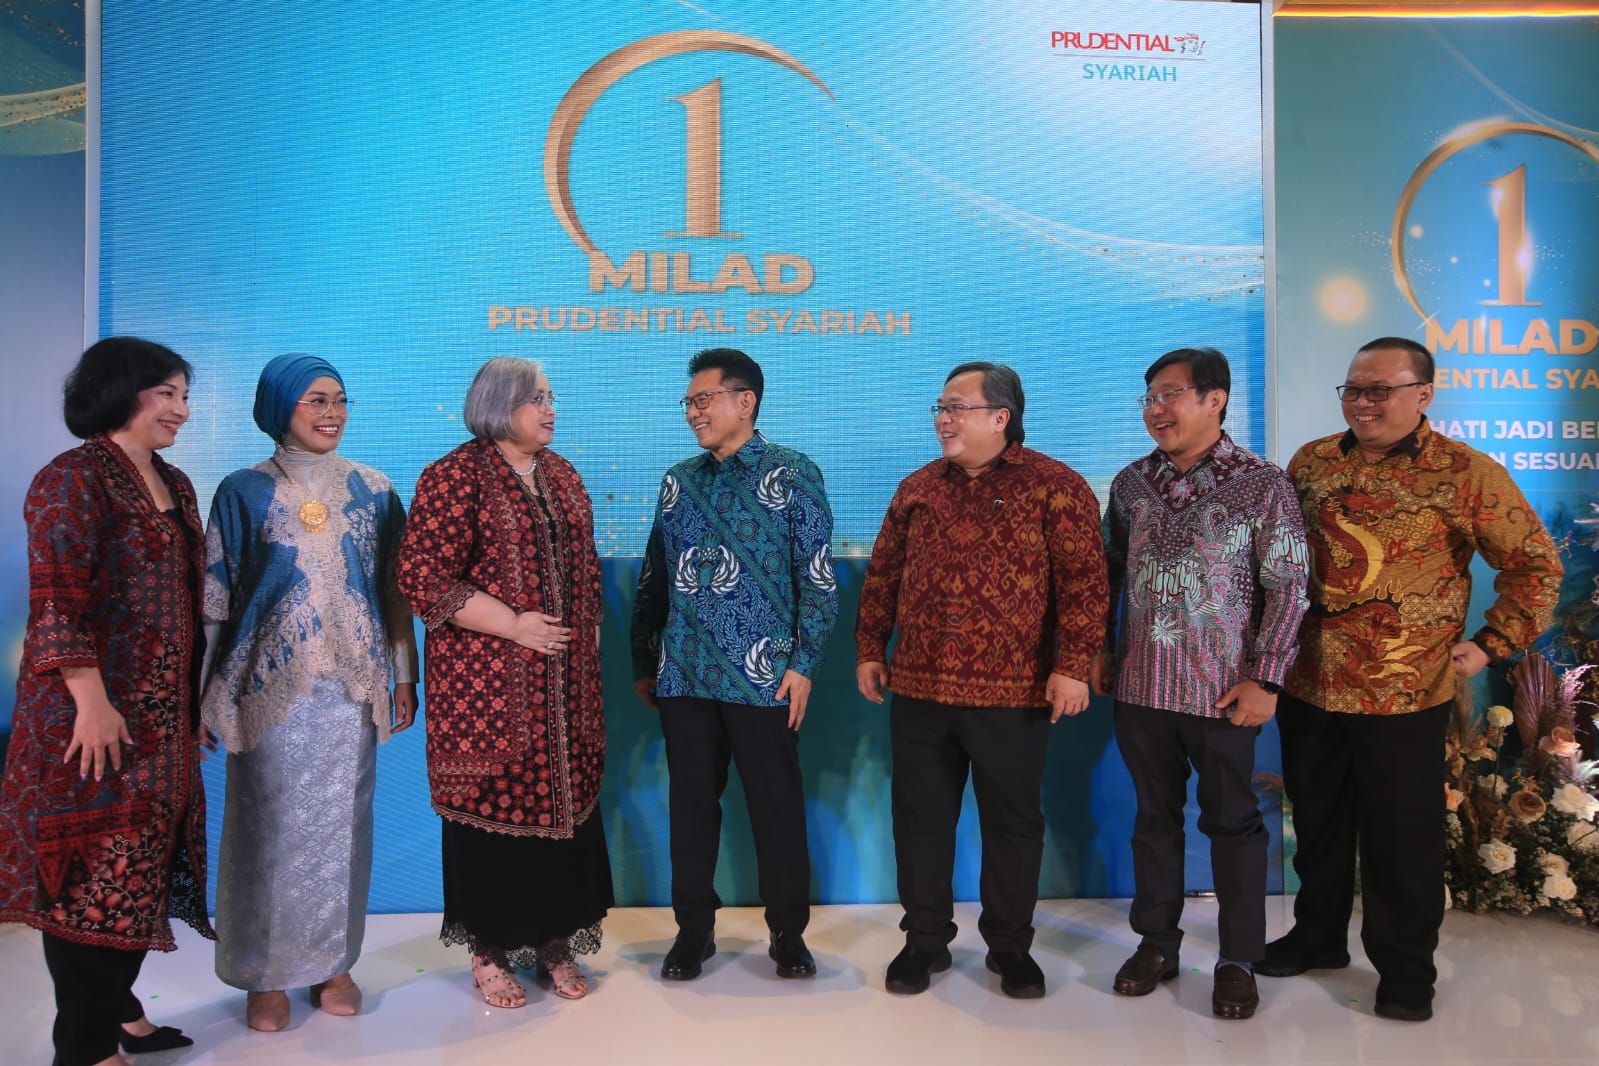 Rayakan Milad Pertama, Prudential Syariah Tegaskan Komitmen  Wujudkan Perlindungan yang Amanah Bagi Keluarga Indonesia